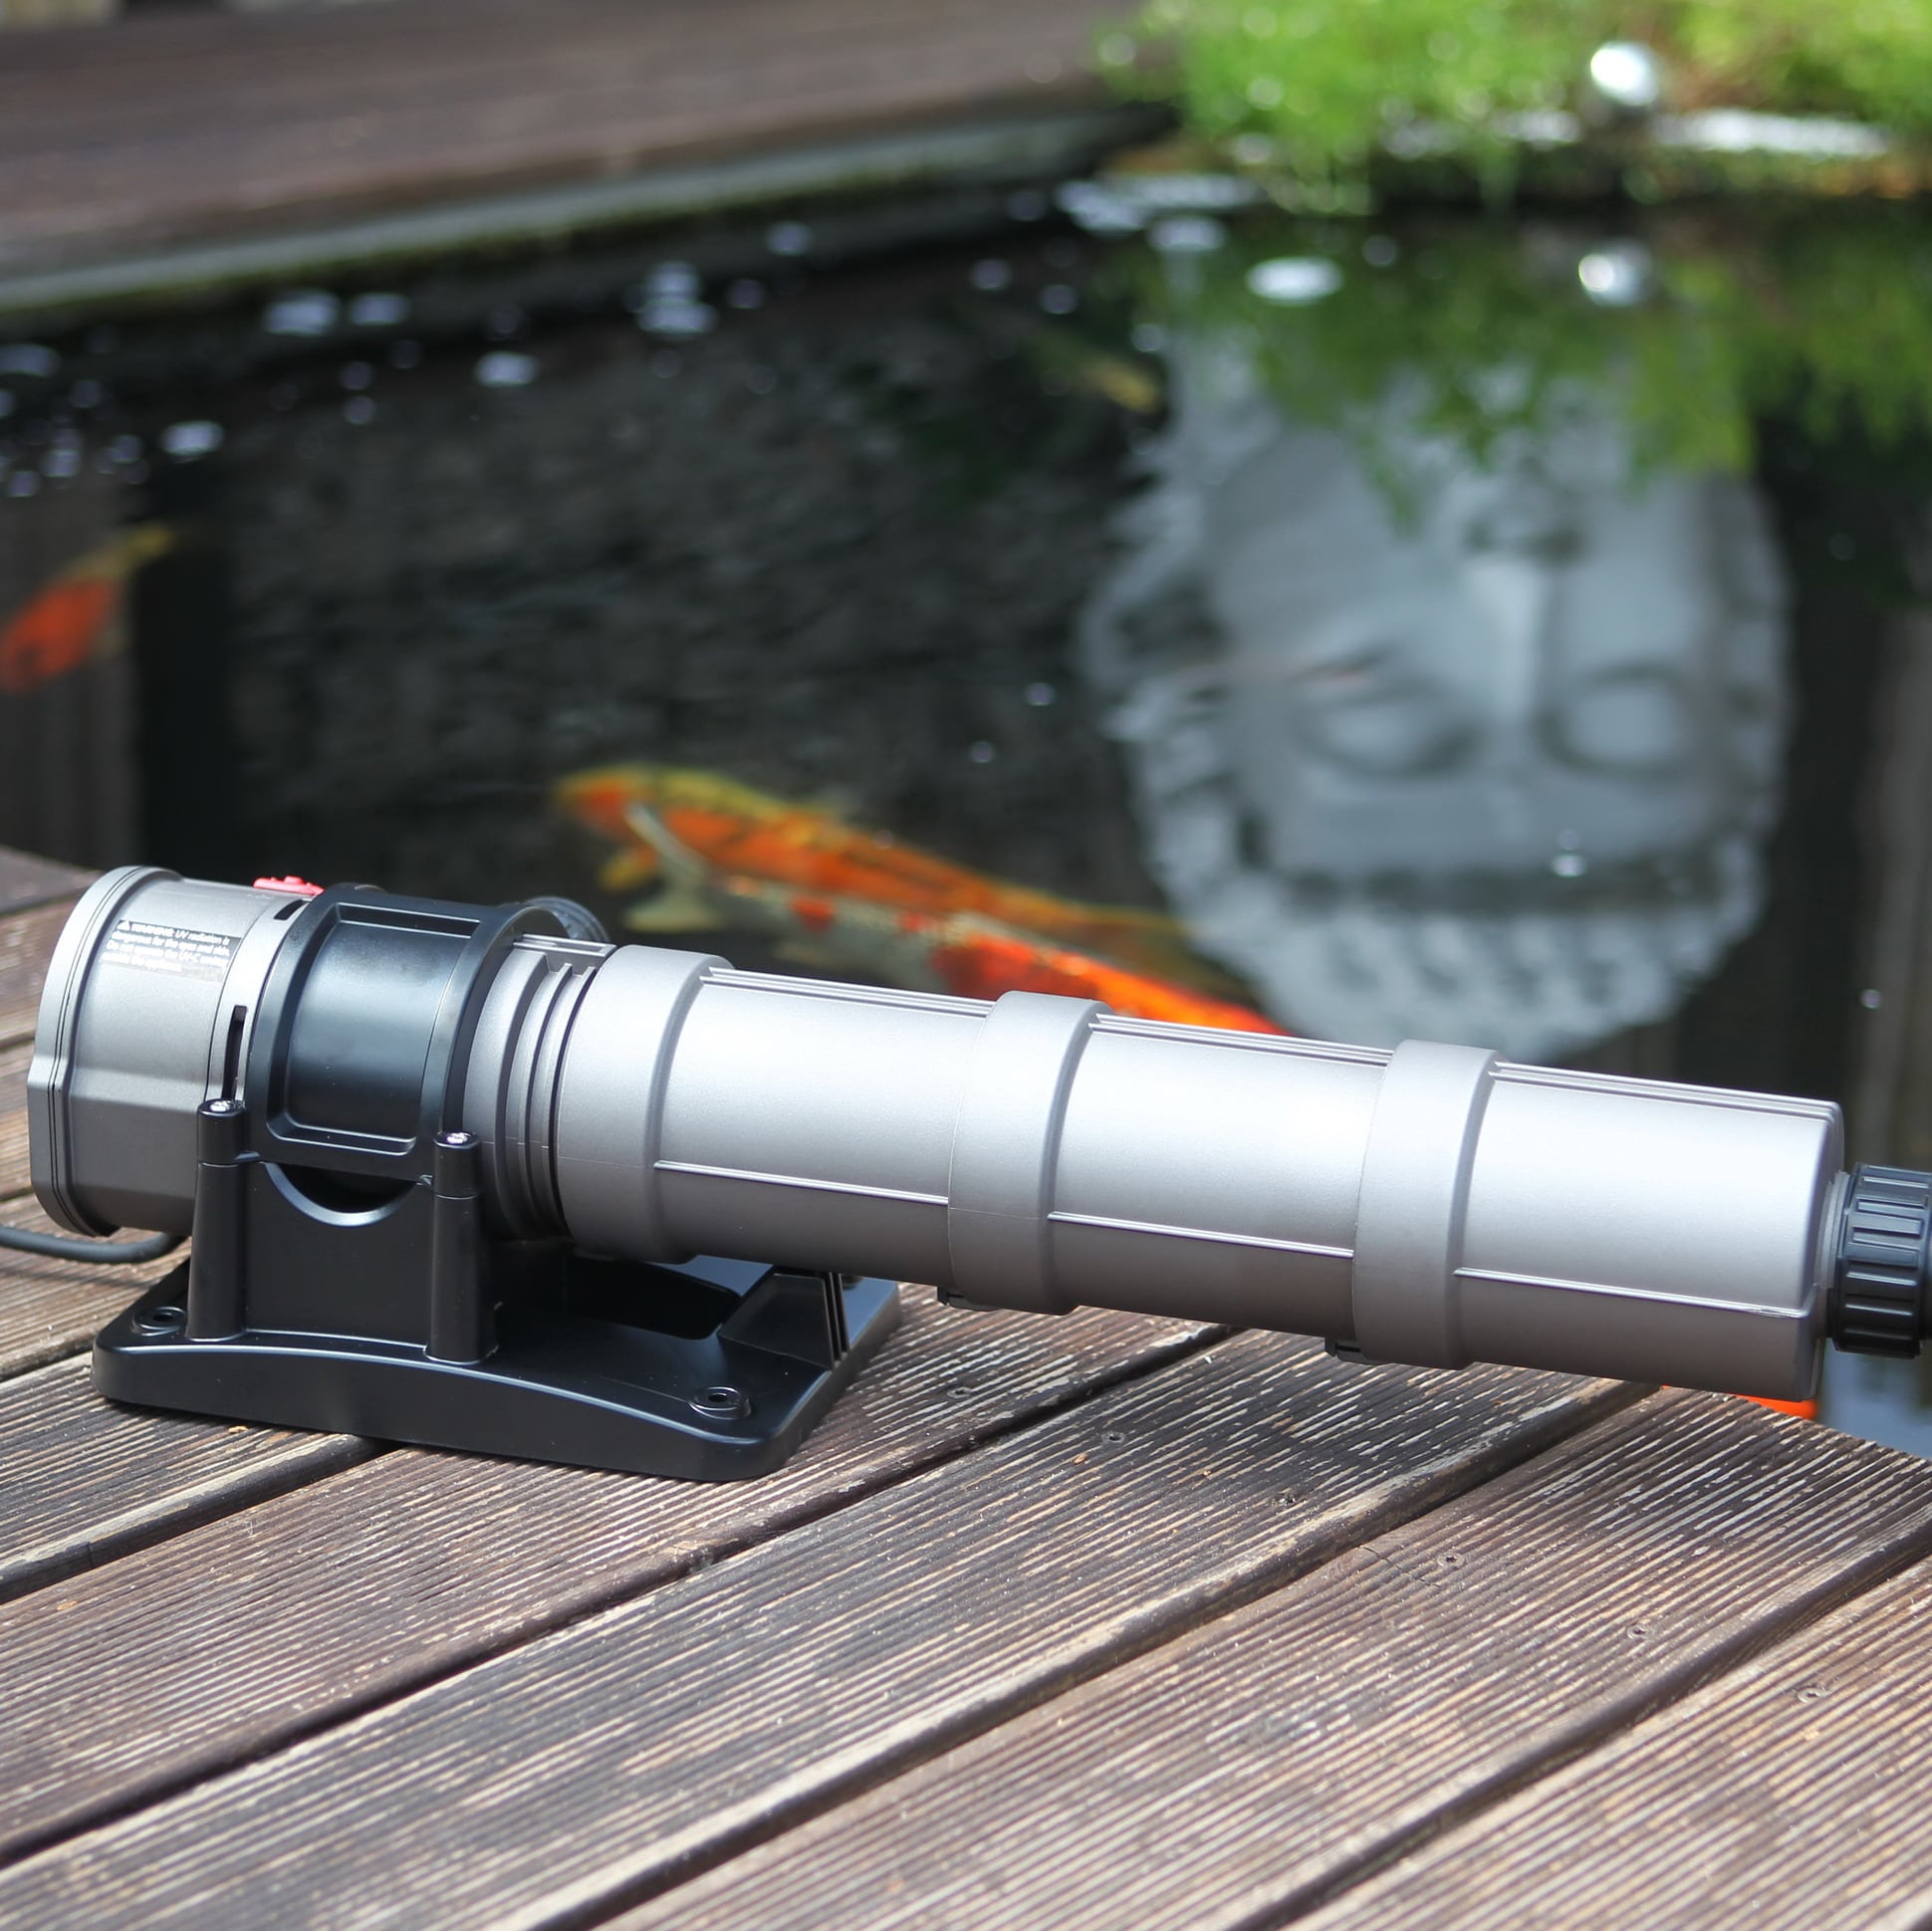 JBL Stérilisateur UV-C compact pour aquarium d'eau douce, contre la  turbidité de l'eau